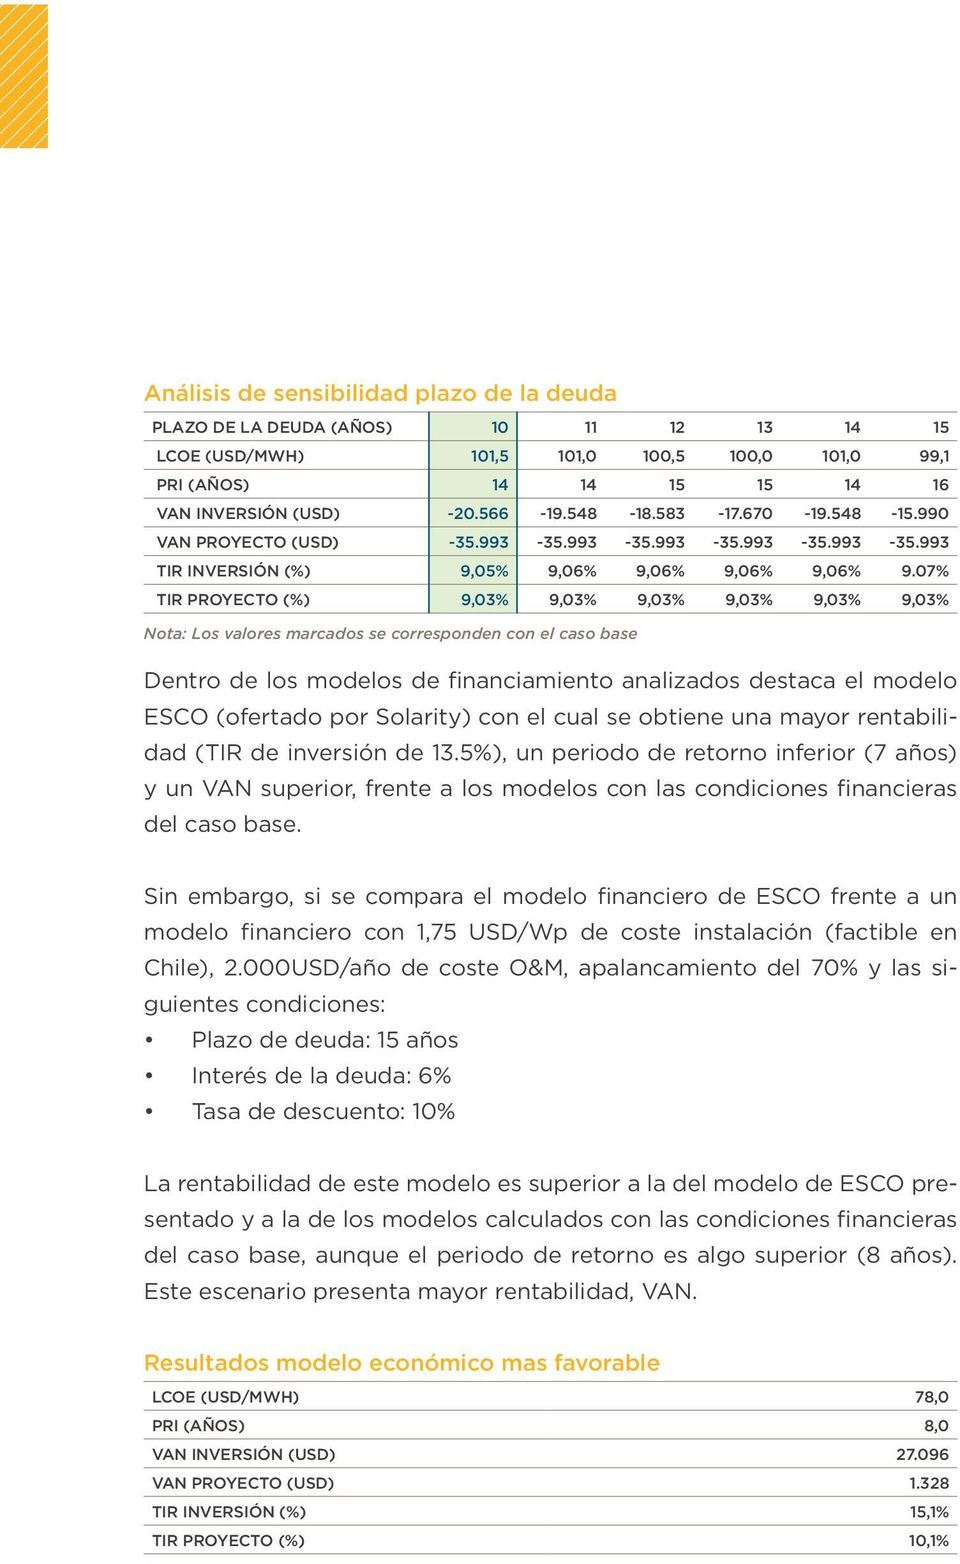 07% TIR PROYECTO (%) 9,03% 9,03% 9,03% 9,03% 9,03% 9,03% Dentro de los modelos de financiamiento analizados destaca el modelo ESCO (ofertado por Solarity) con el cual se obtiene una mayor